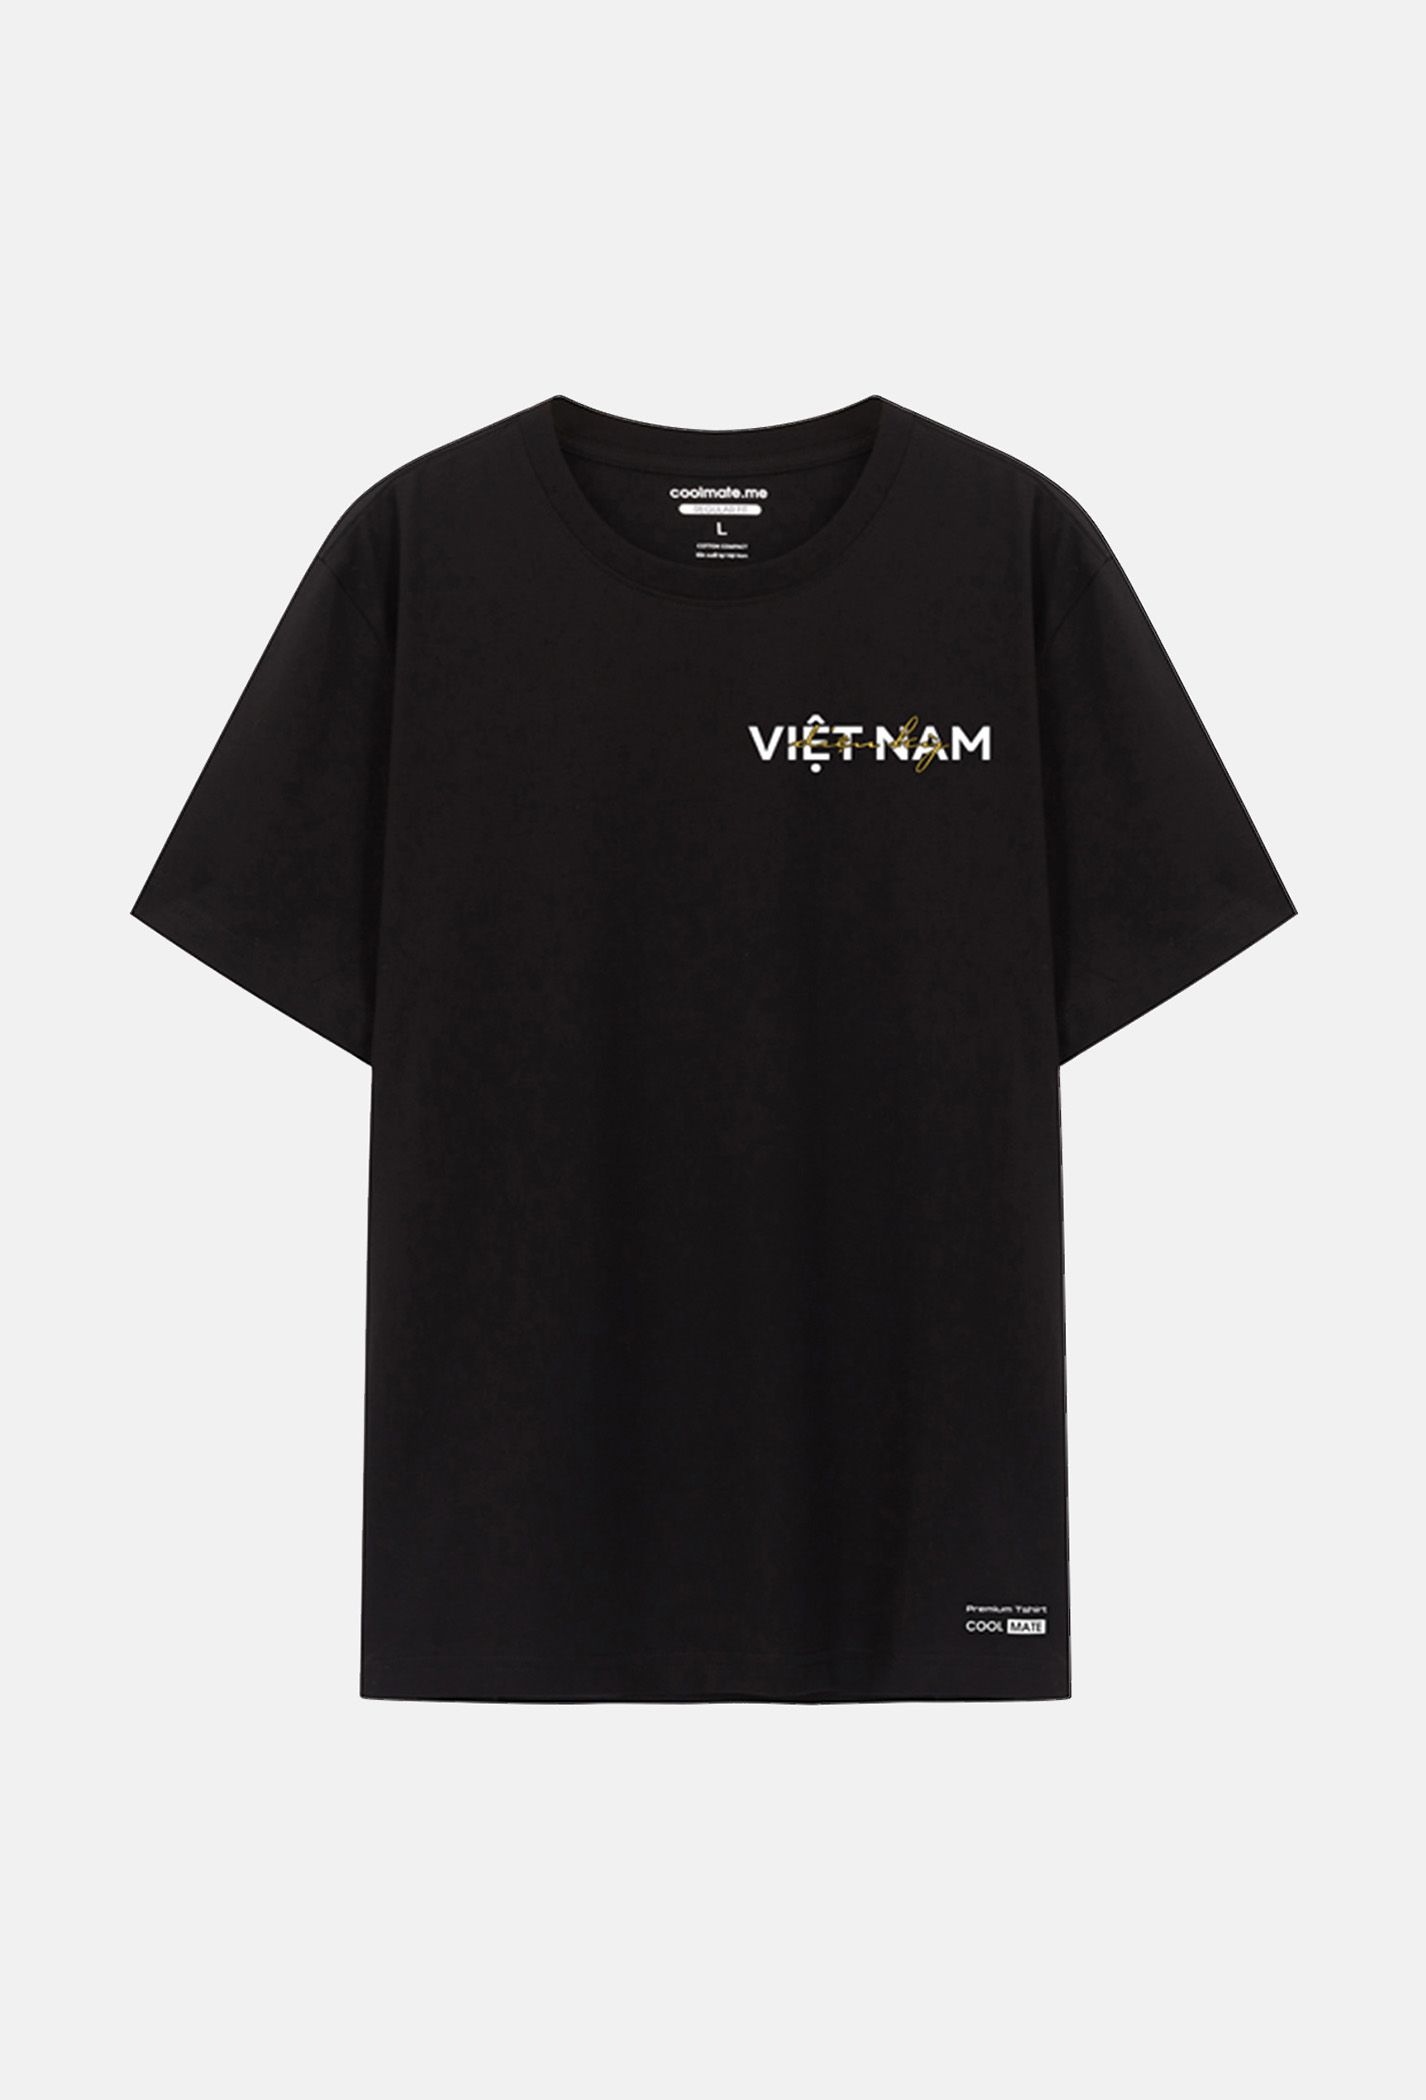 Áo thun Cotton Compact in hình "Việt Nam diệu kì " - Màu đen  2